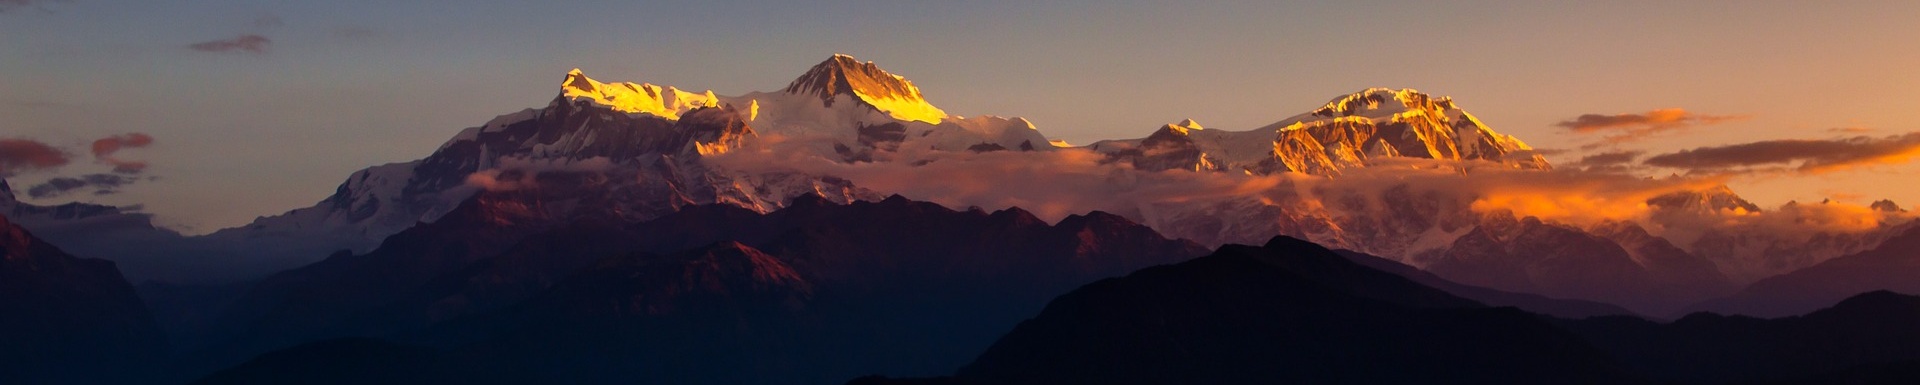 Himalaya nepal